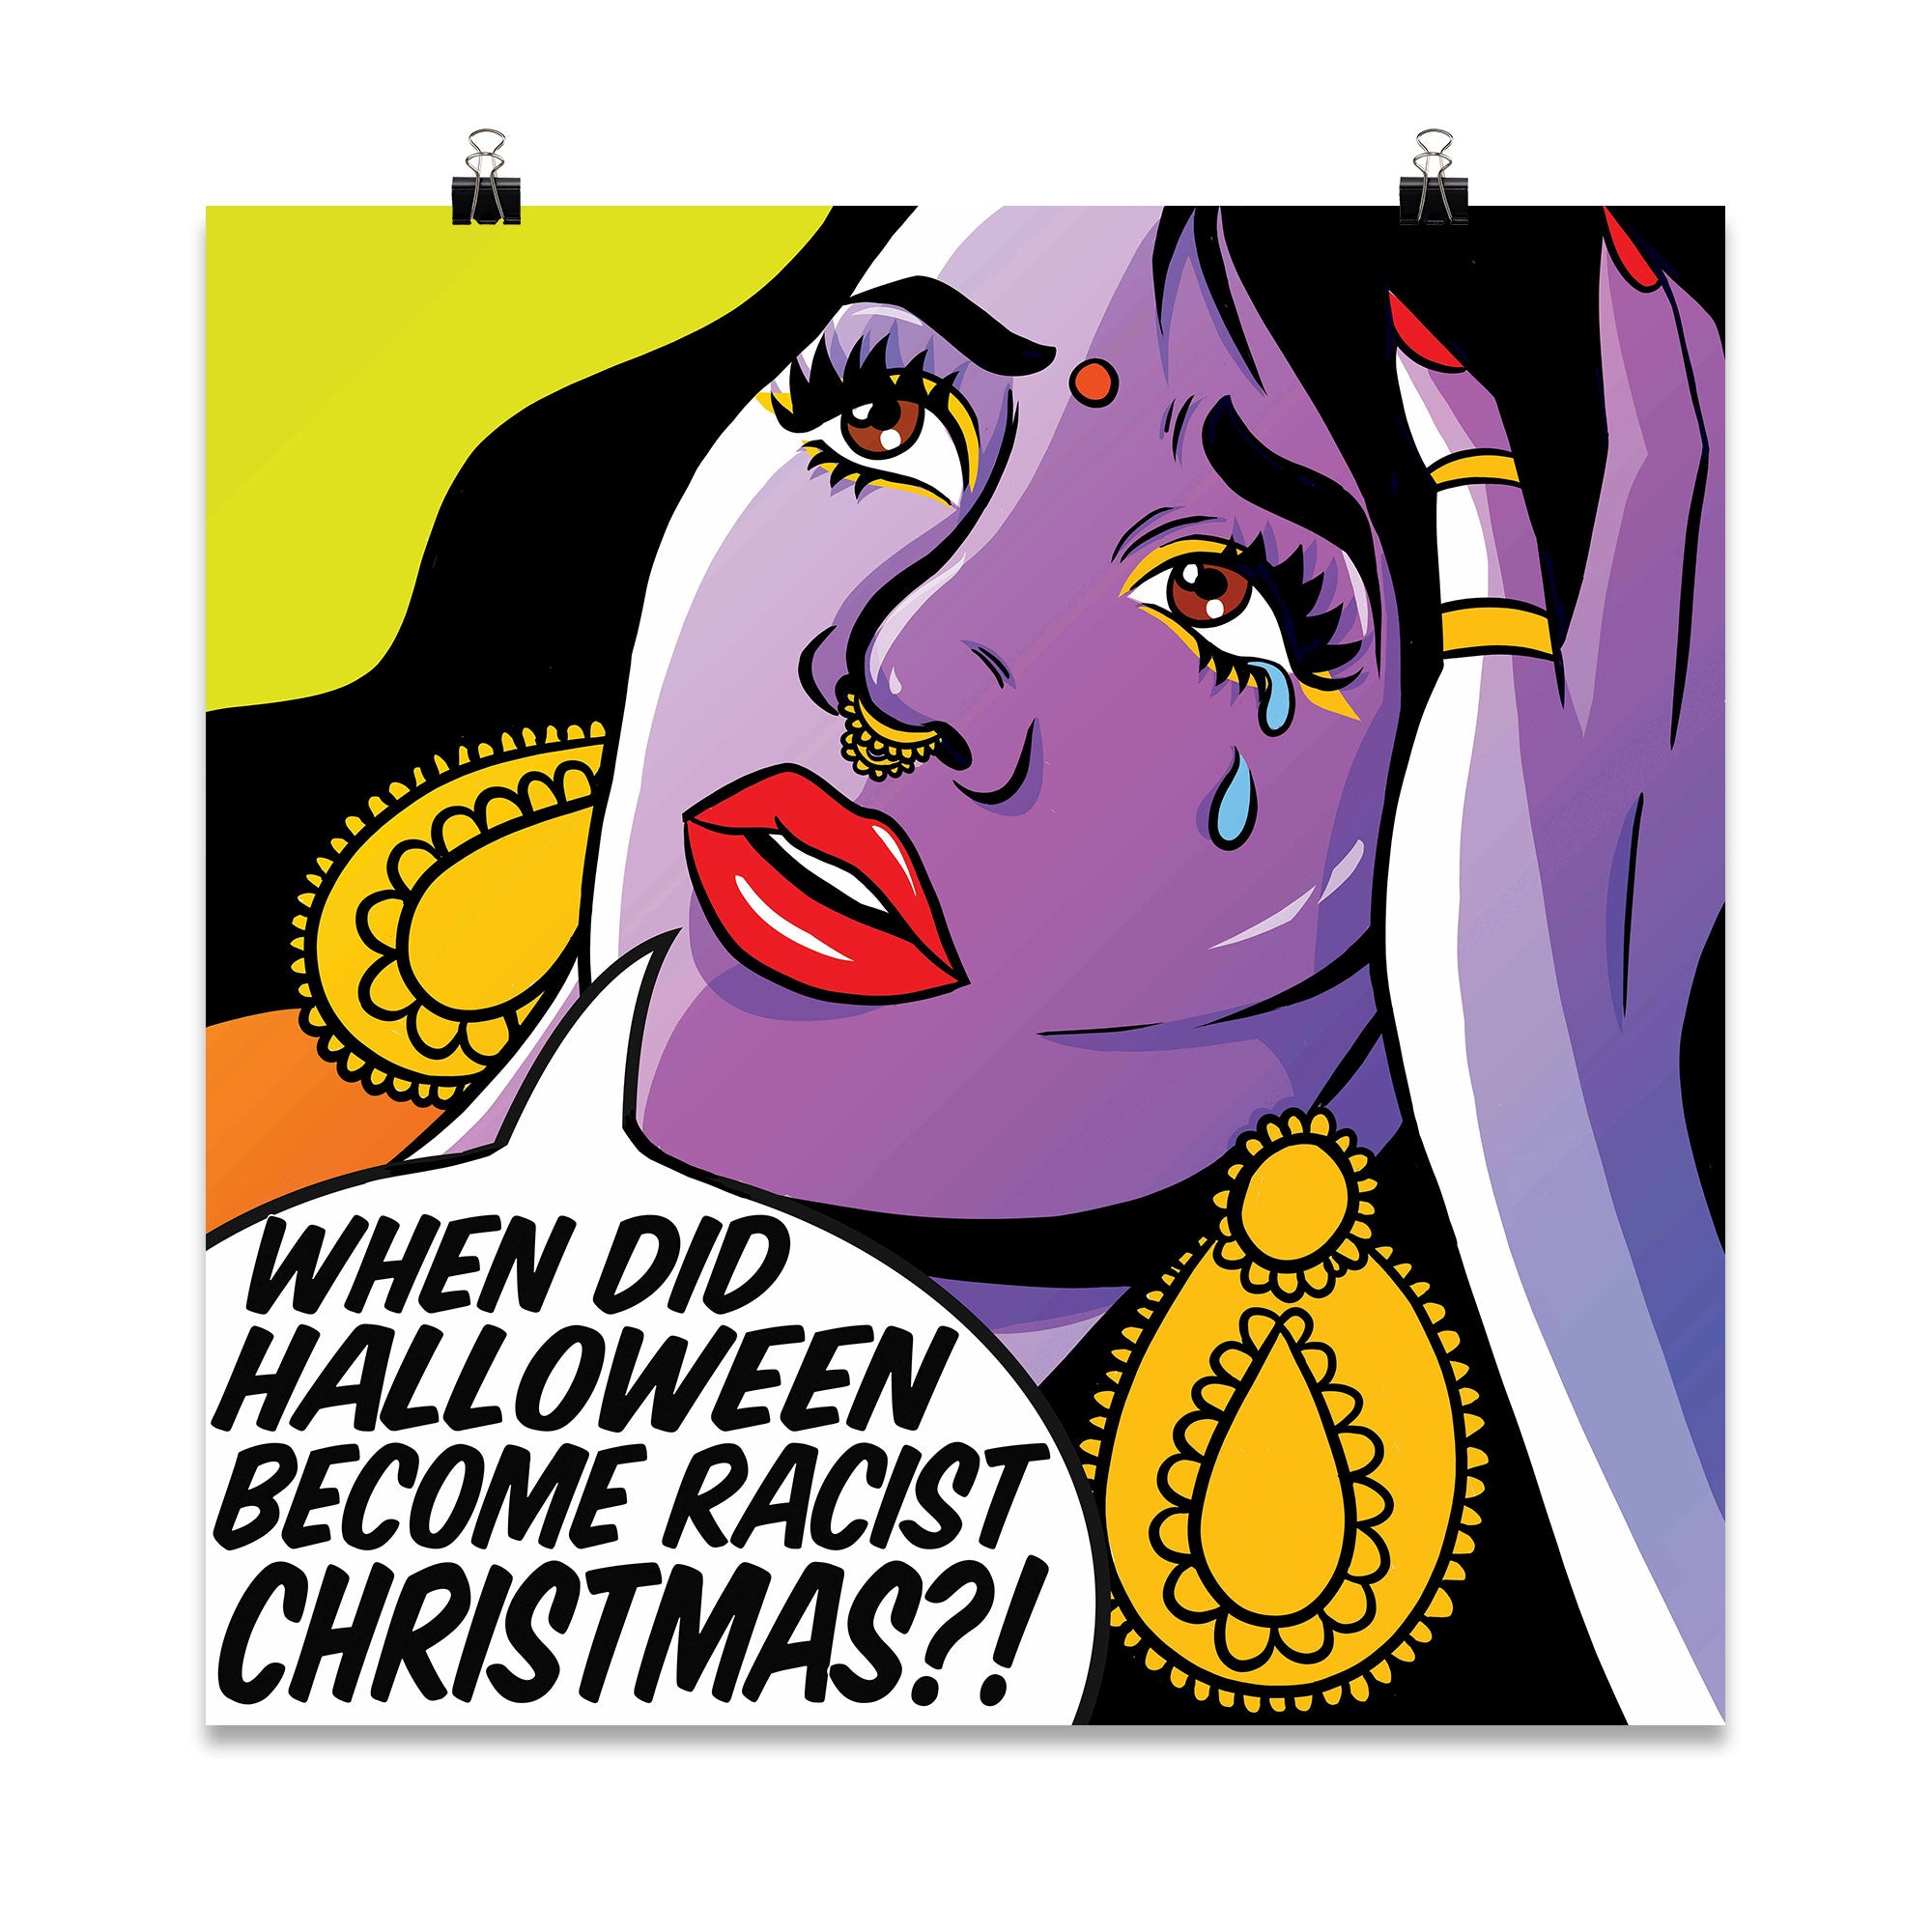 'Racist Christmas' Poster Print